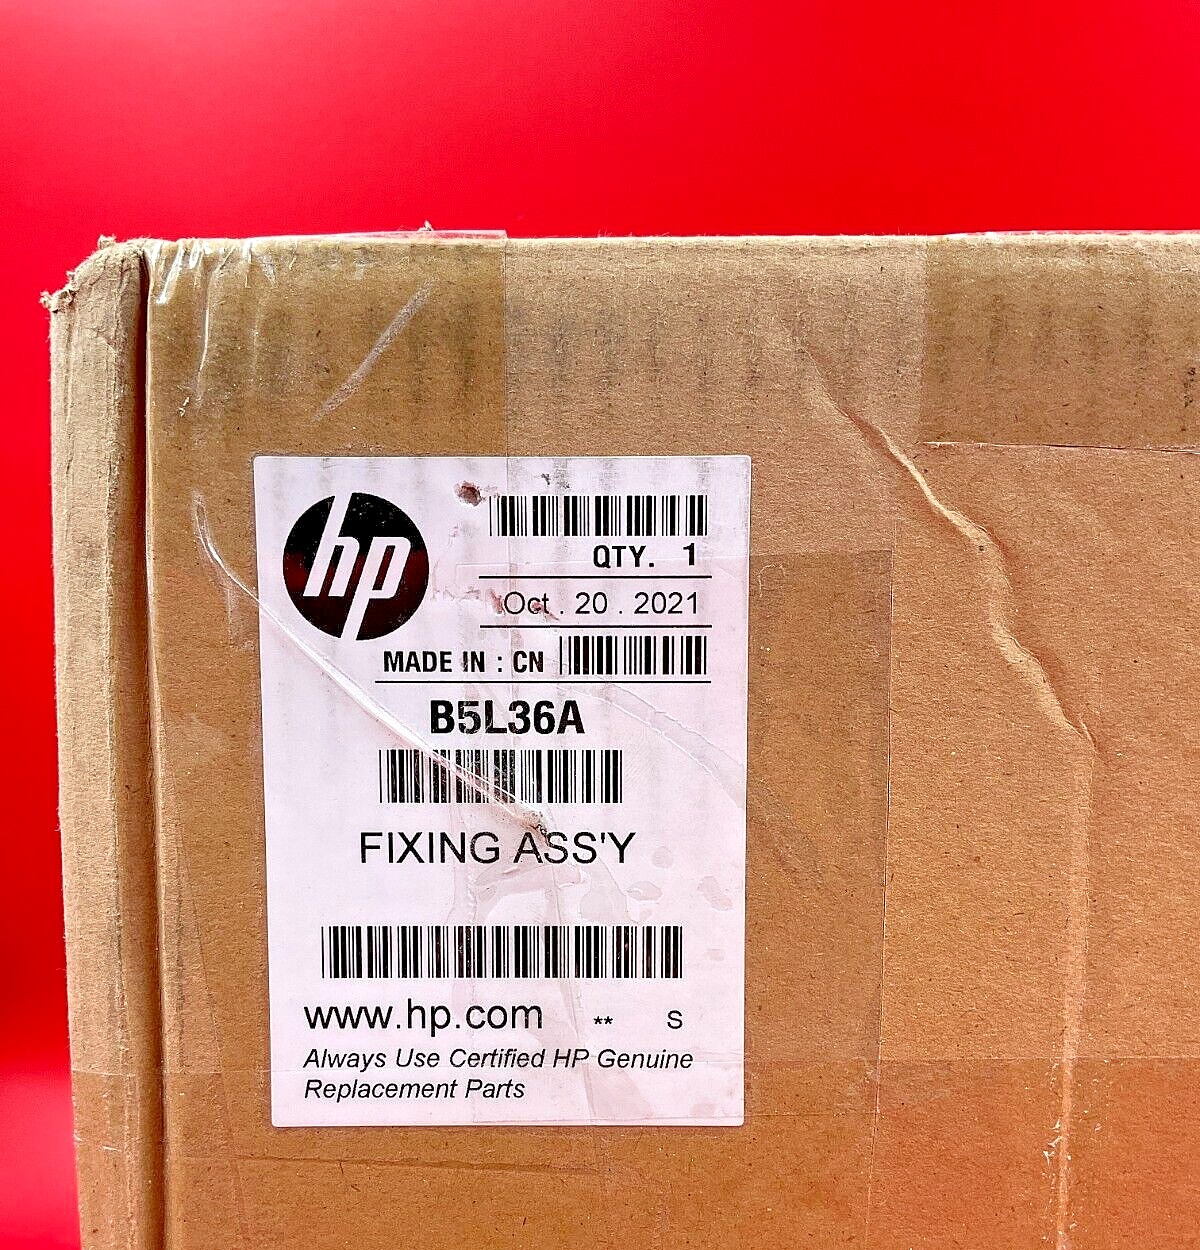 HP Color LaserJet Fuser Kit 220v M578 B5L36A❤️✅❤️✅  Brand New Sealed